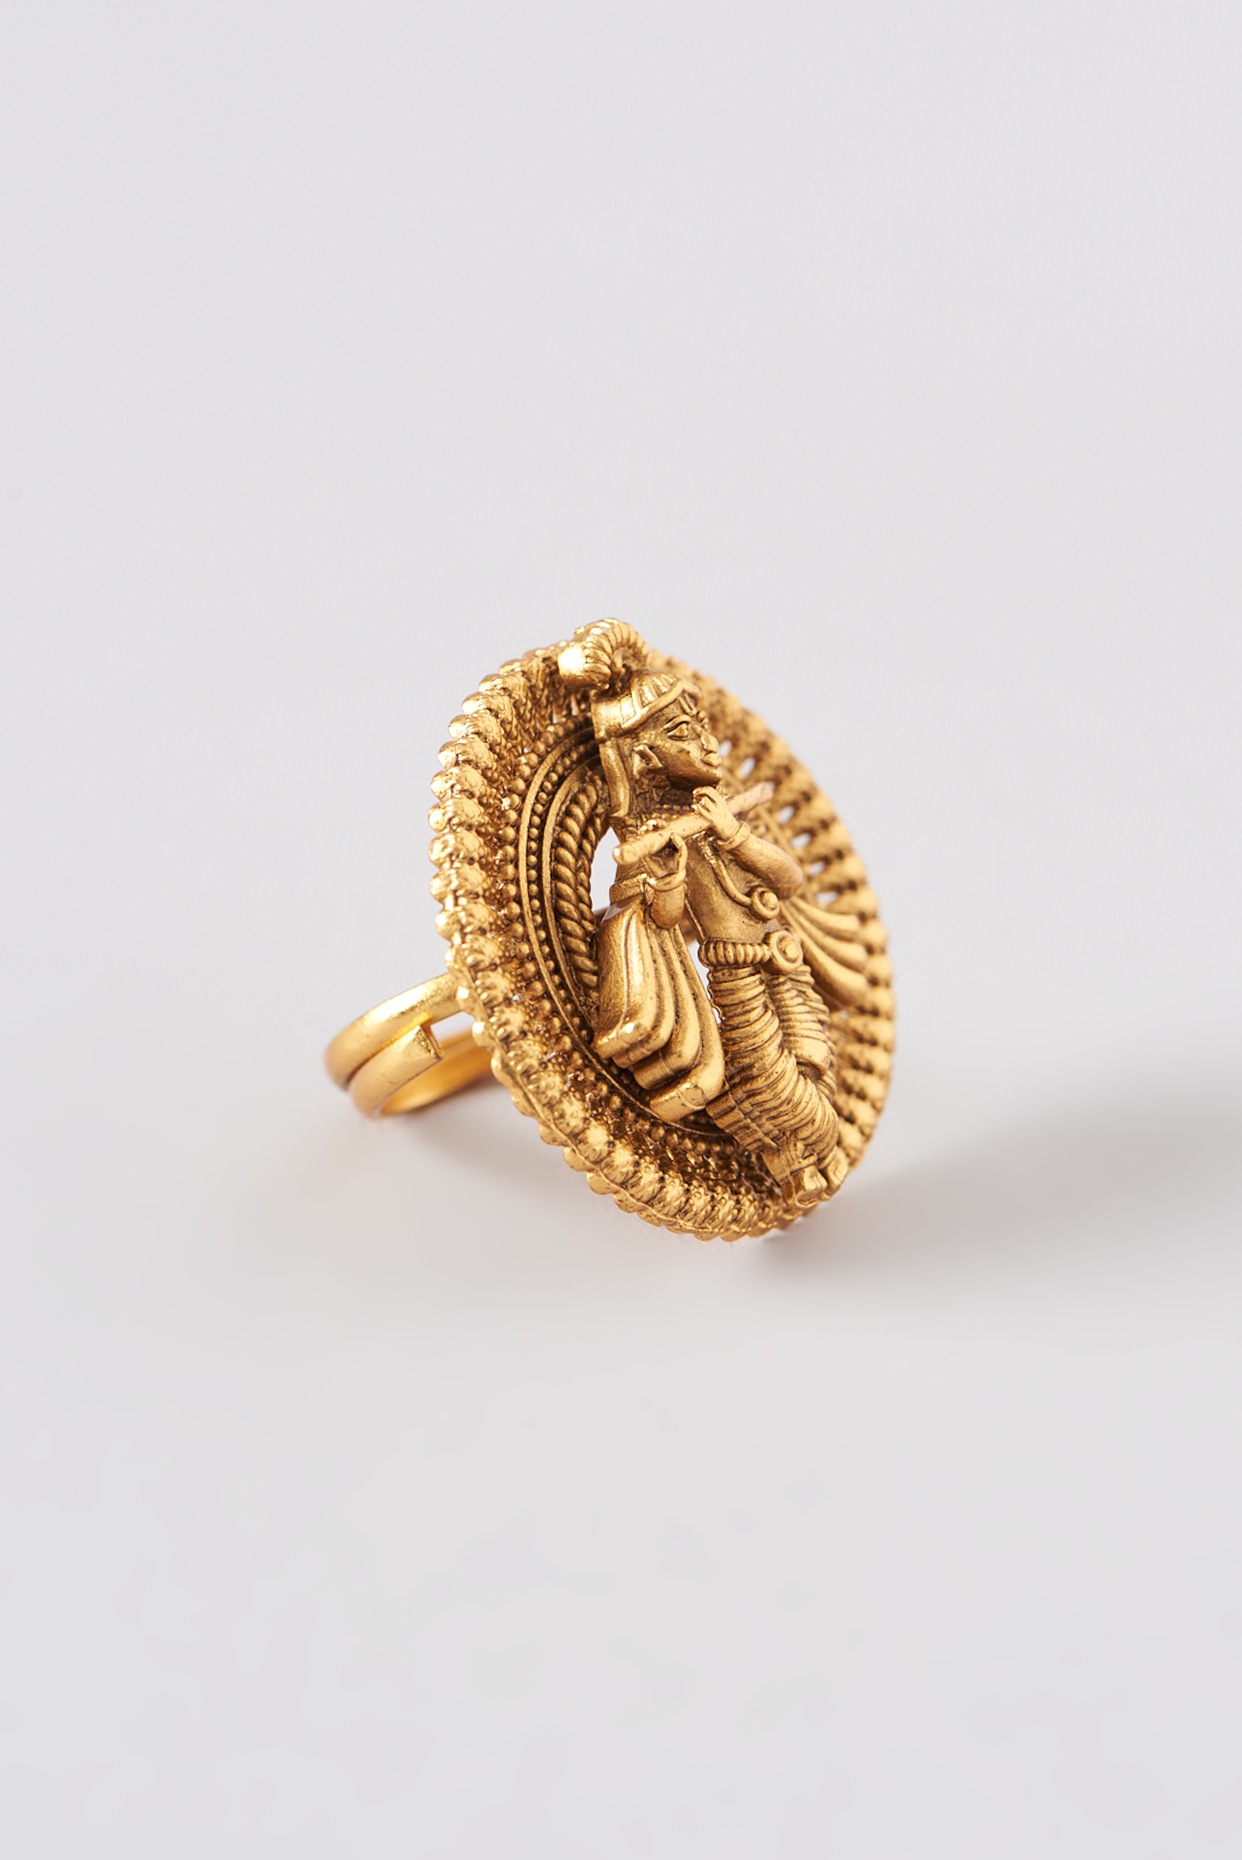 Balm in Gilead Ring – Cornerstone Jewellery